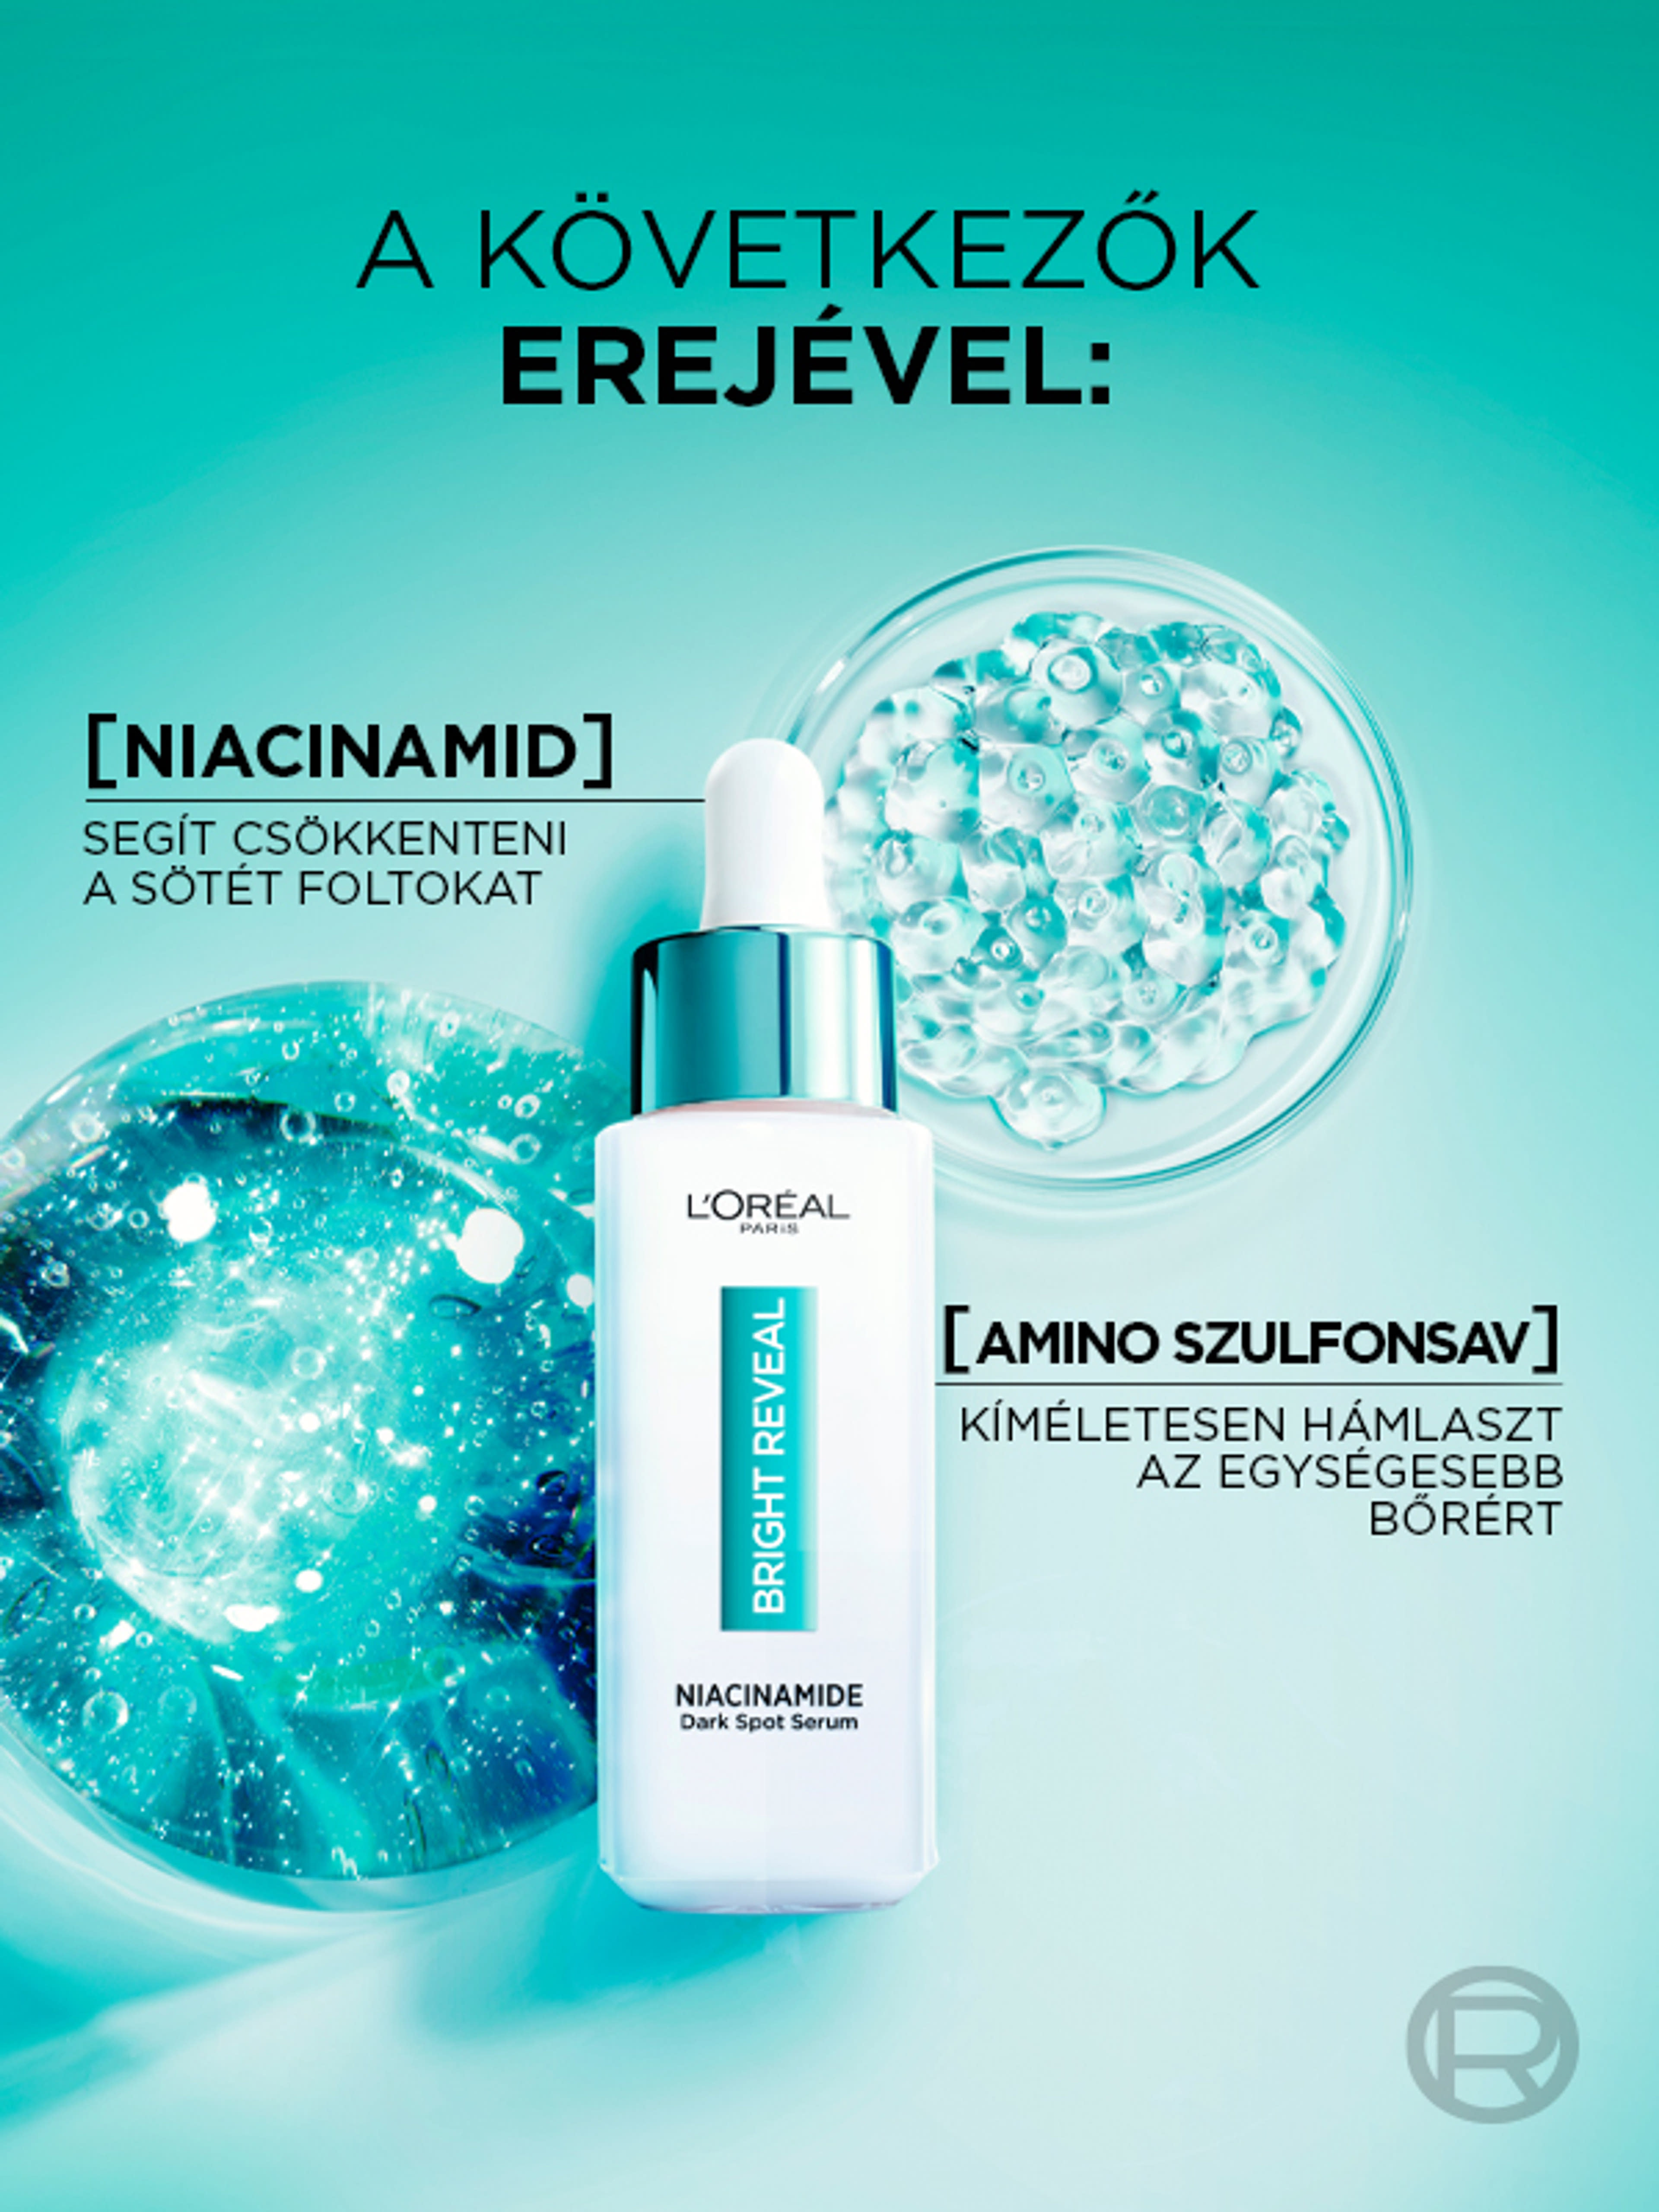 L'Oréal Paris Bright Reveal sötét foltok elleni szérum niacinamiddal - 30 ml-4